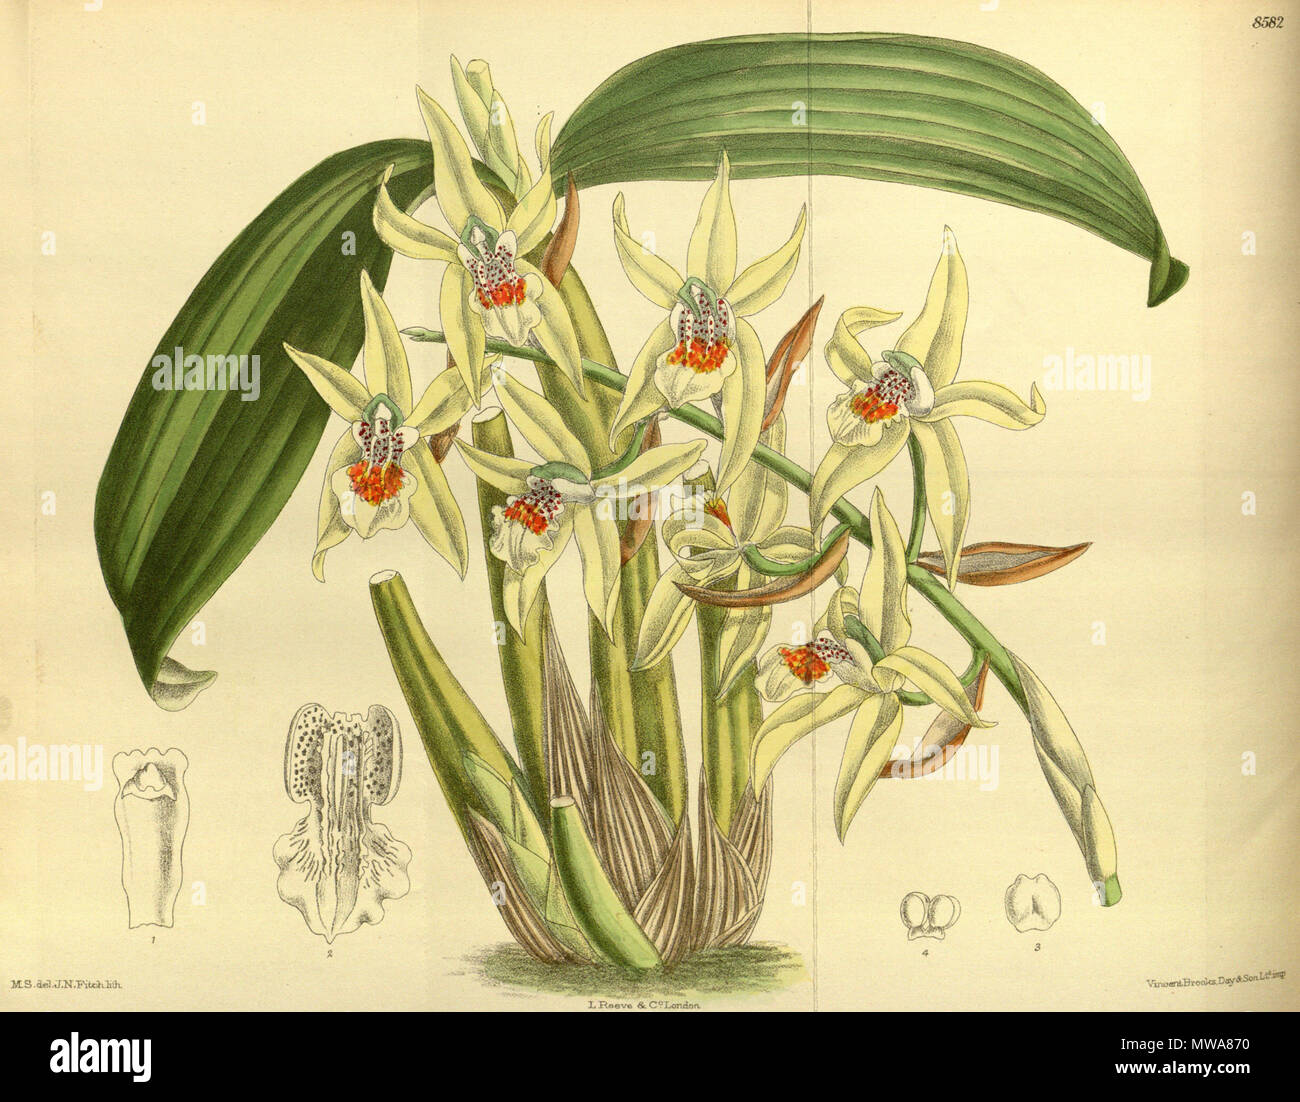 . Coelogyne brachyptera, Orchidaceae . 1914. M.S. del., J.N.Fitch lith. 137 Coelogyne brachyptera 140-8582 Stock Photo